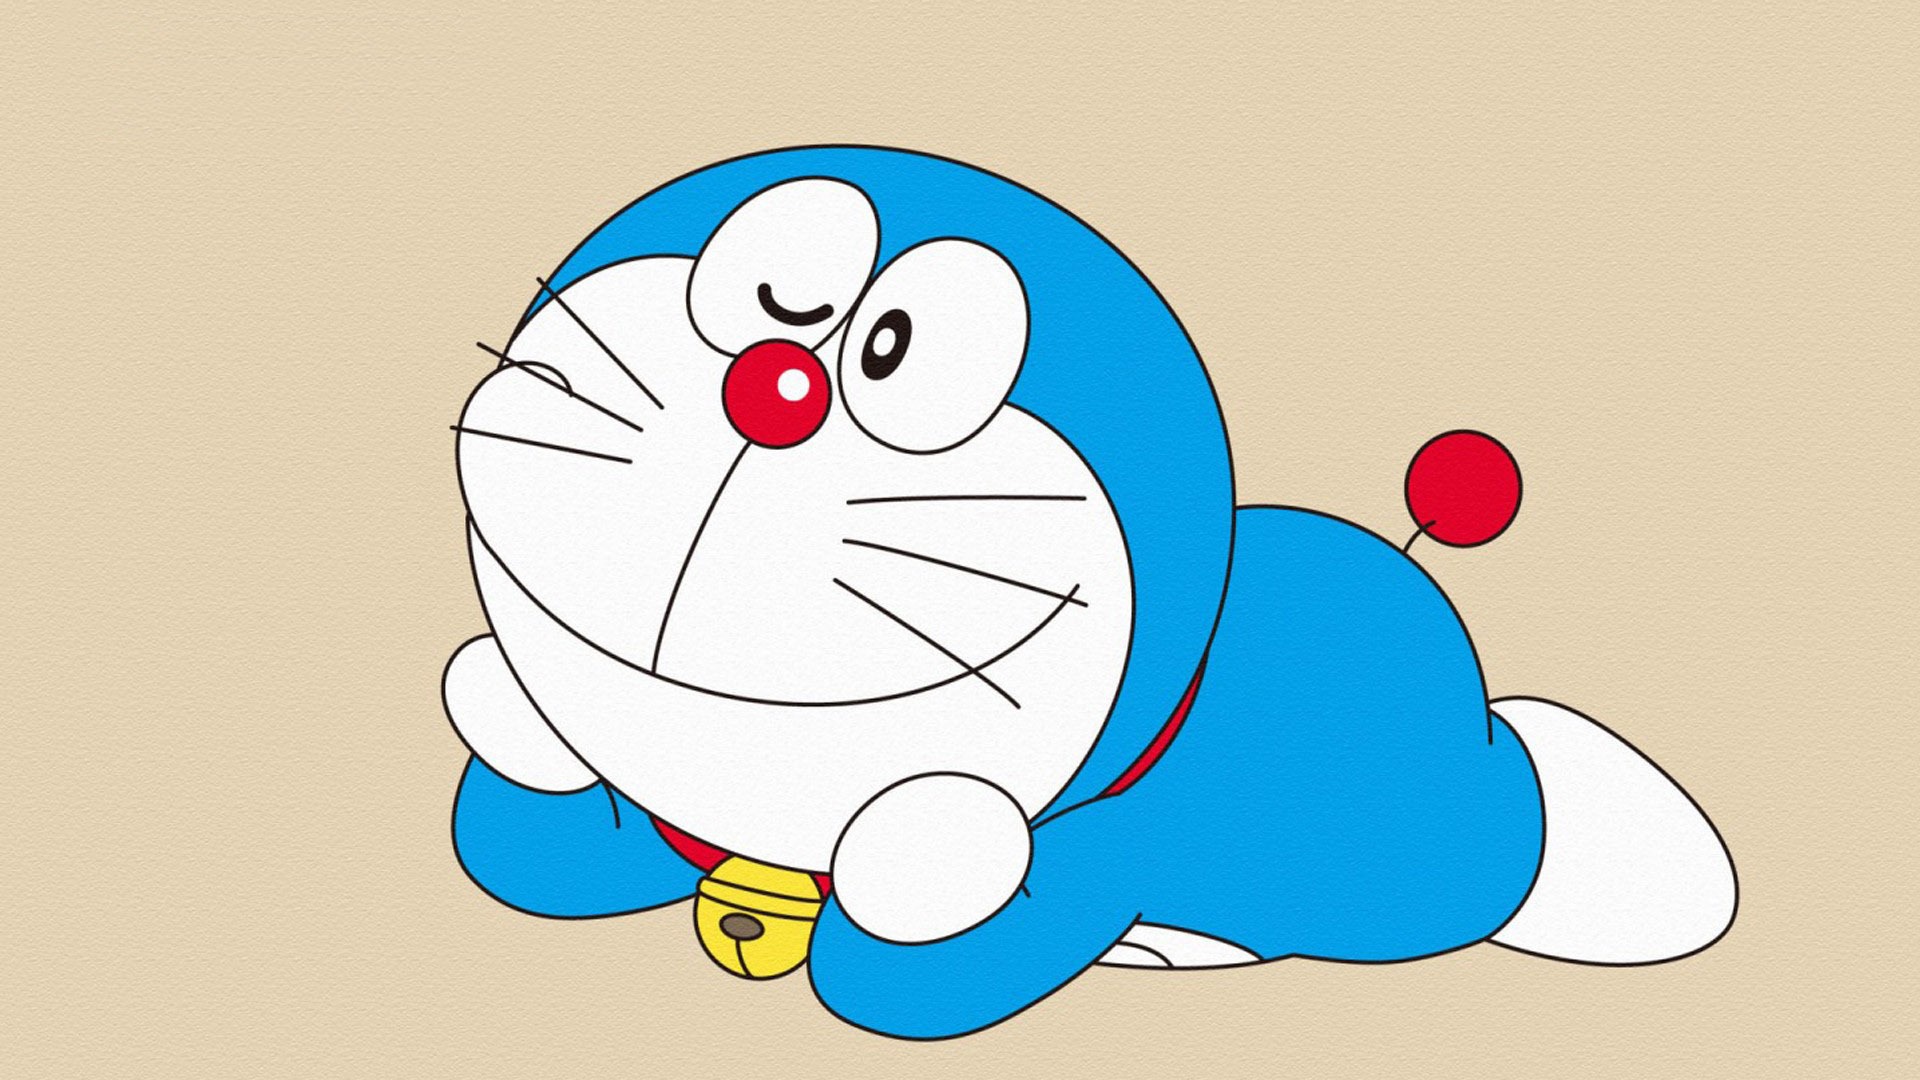 75+] Doraemon Wallpapers - WallpaperSafari